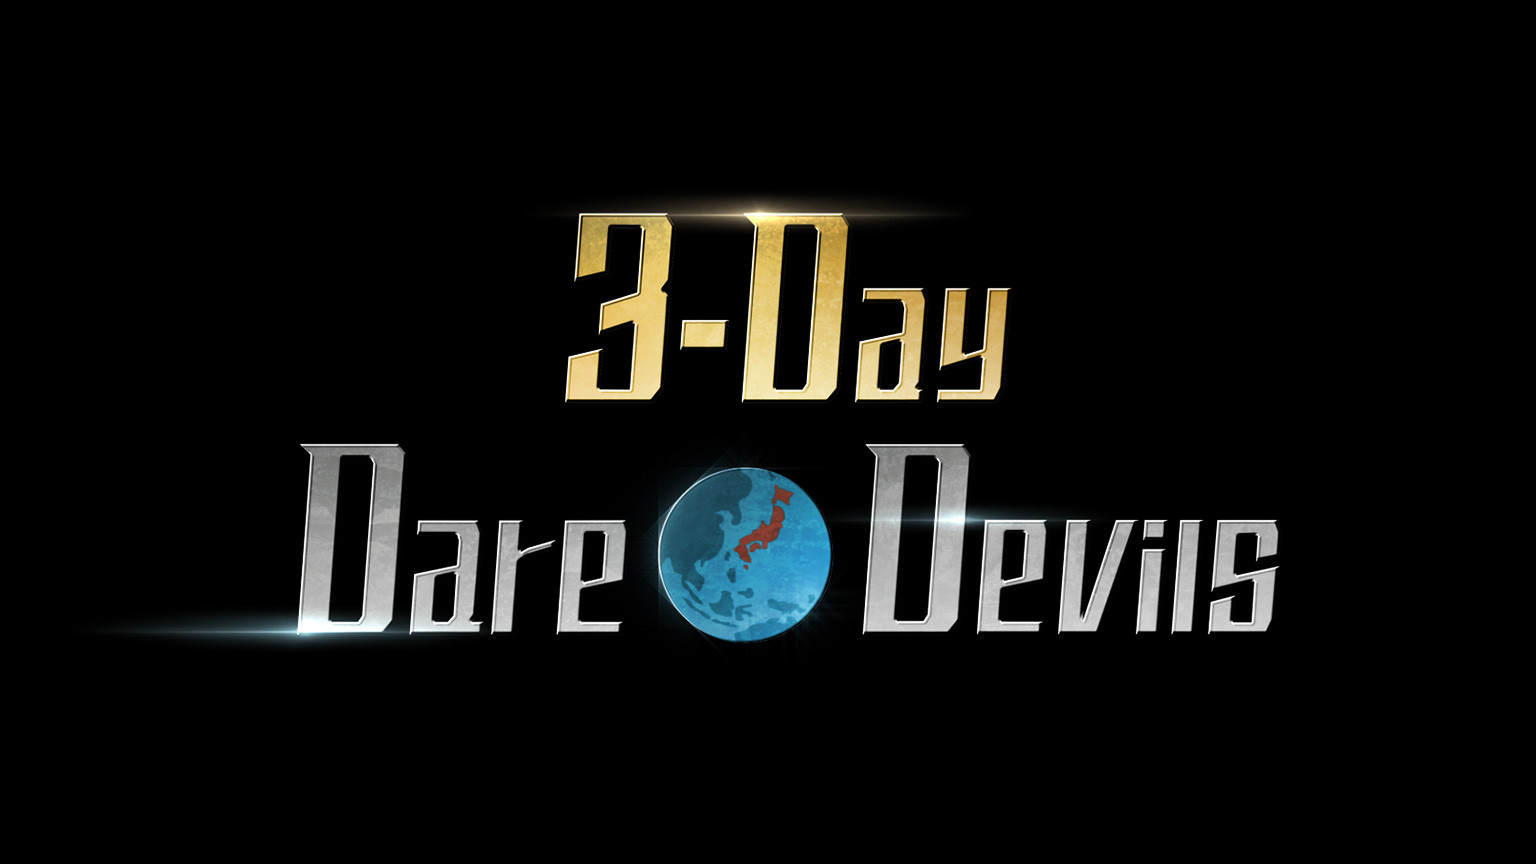 บ้าระห่ำใน 3 วัน
3-Day Dare*Devils